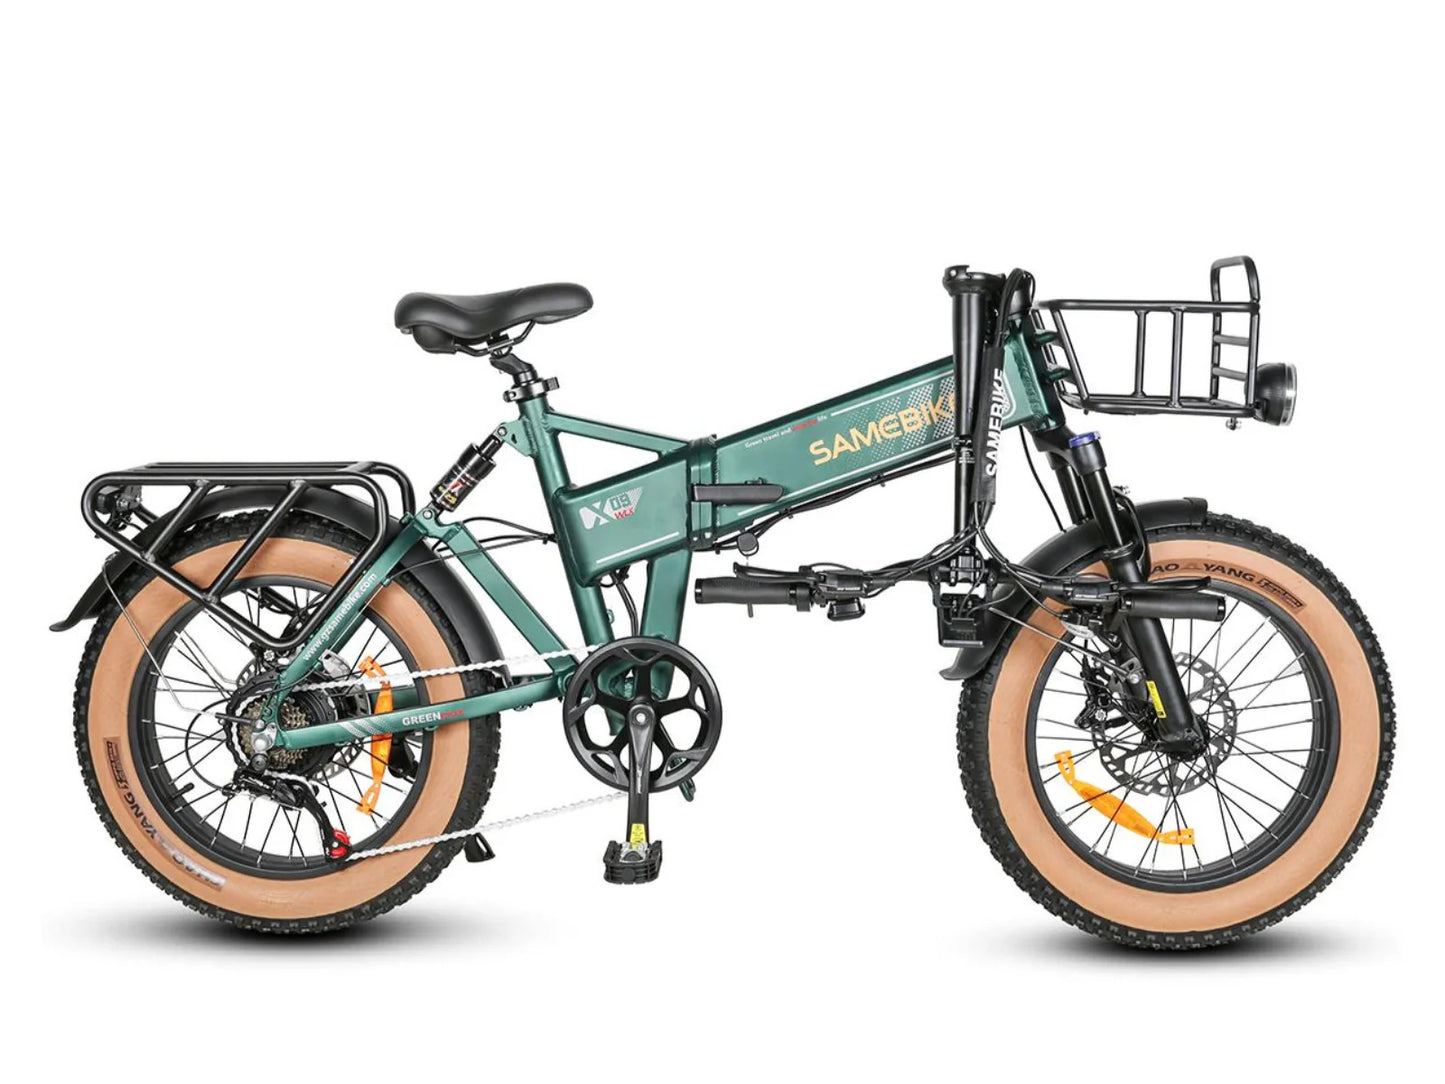 SAMEBIKE XWXL09 750W dobrável bicicleta elétrica da cidade 20 * 4,0 polegadas pneu gordo 48V 10AH bateria 80km quilometragem máxima